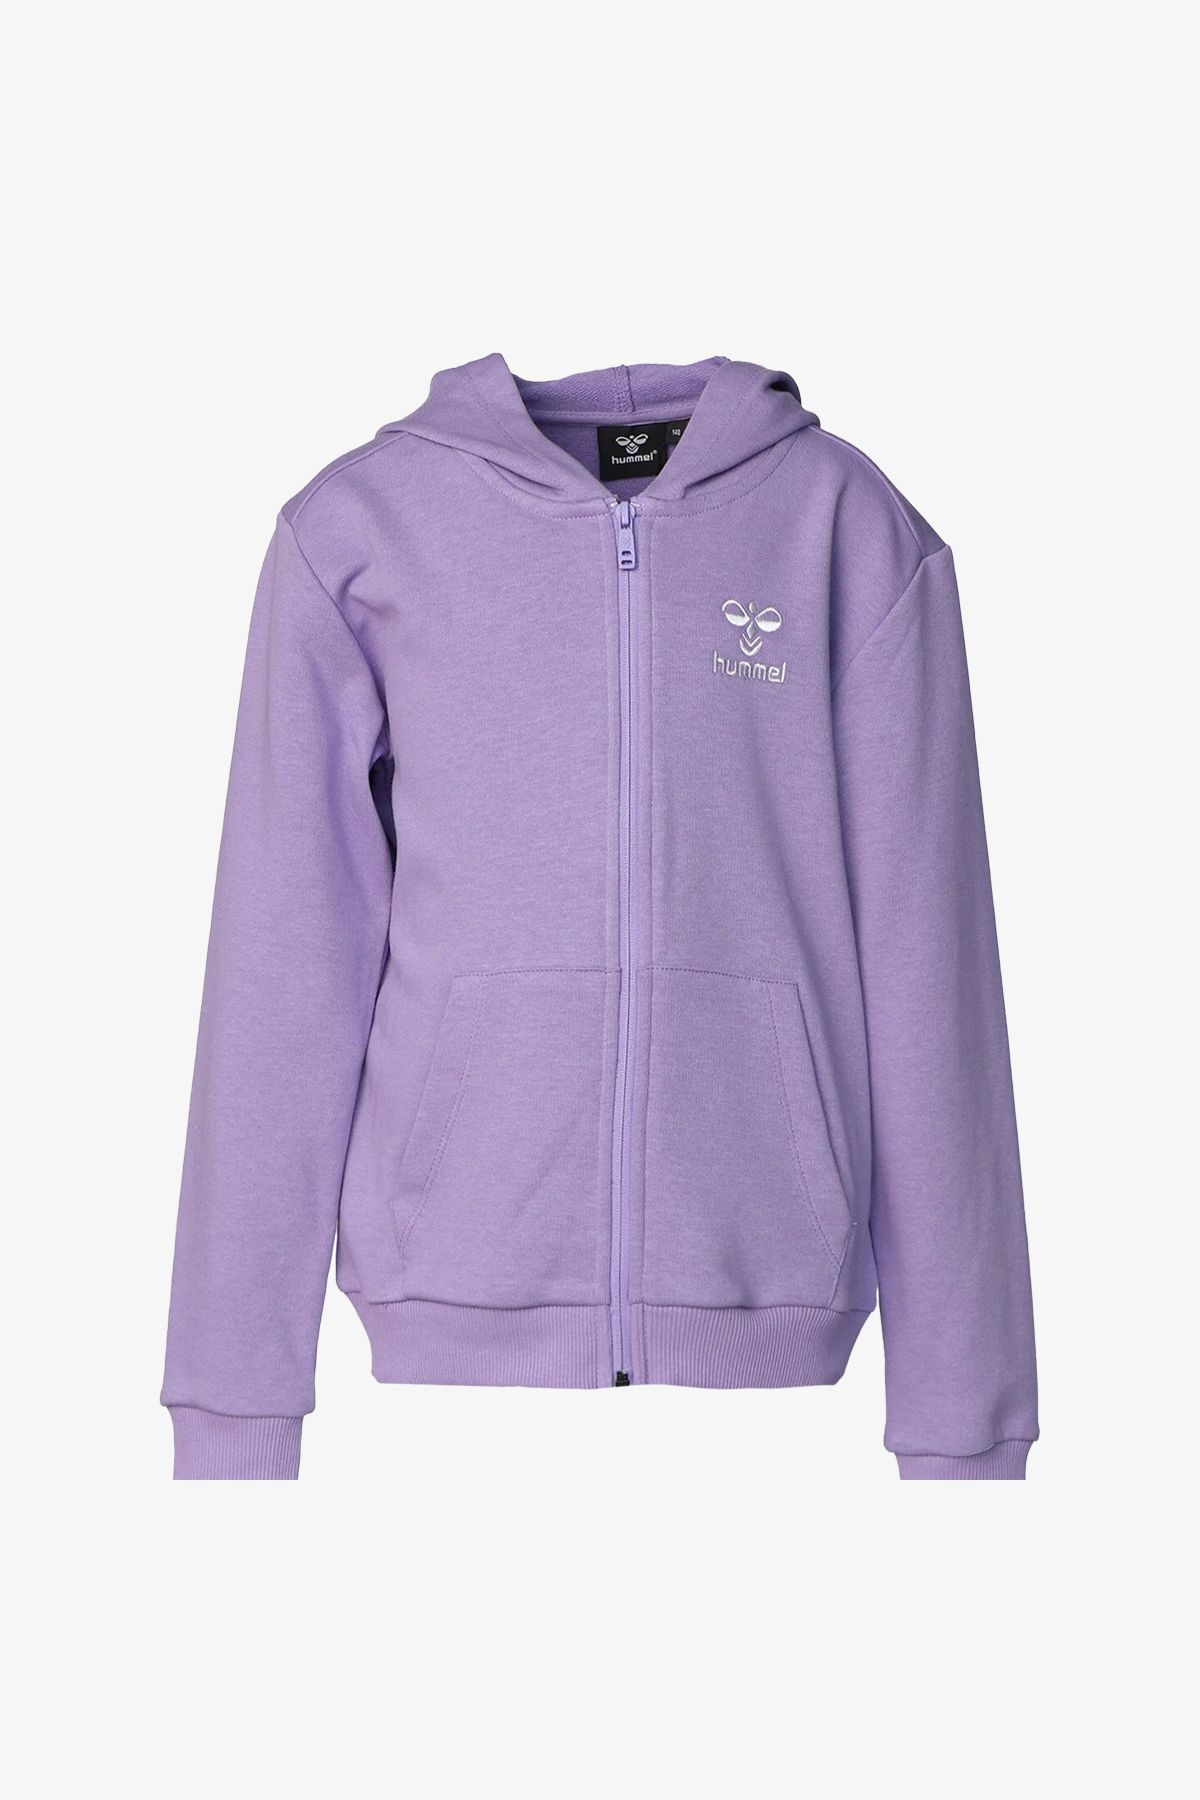 hummel Hmlfelisias Kids Purple Sweatshirt 921599-3524